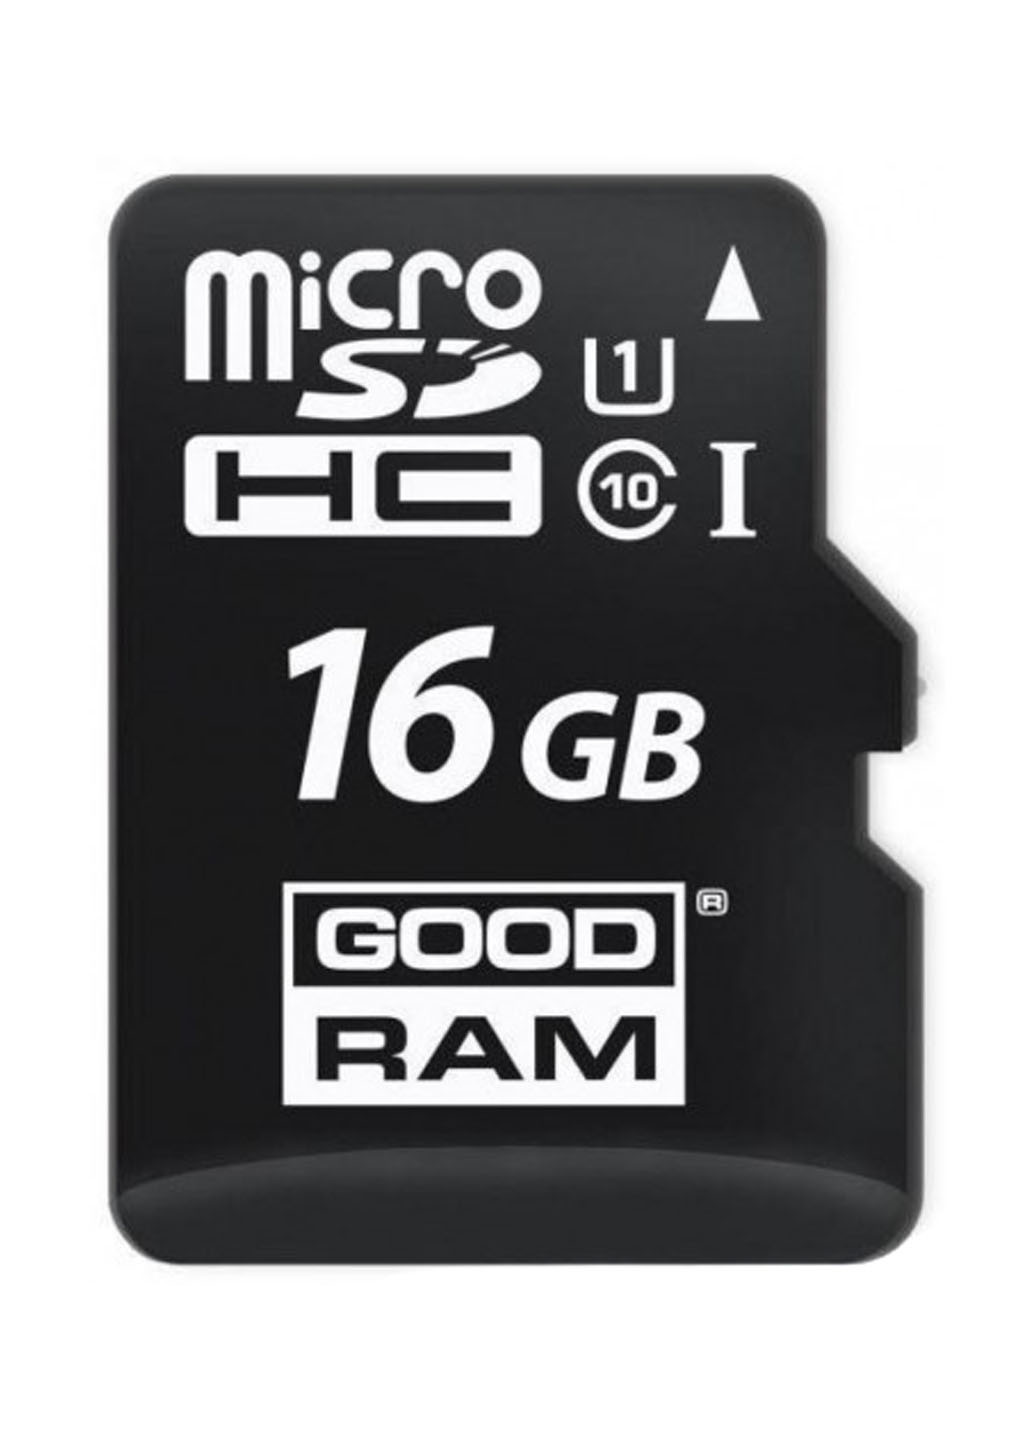 Карта памяти microSDHC 16Gb C10 UHS-I (M1A0-0160R12) Goodram карта памяти goodram microsdhc 16gb c10 uhs-i (m1a0-0160r12) (136711377)